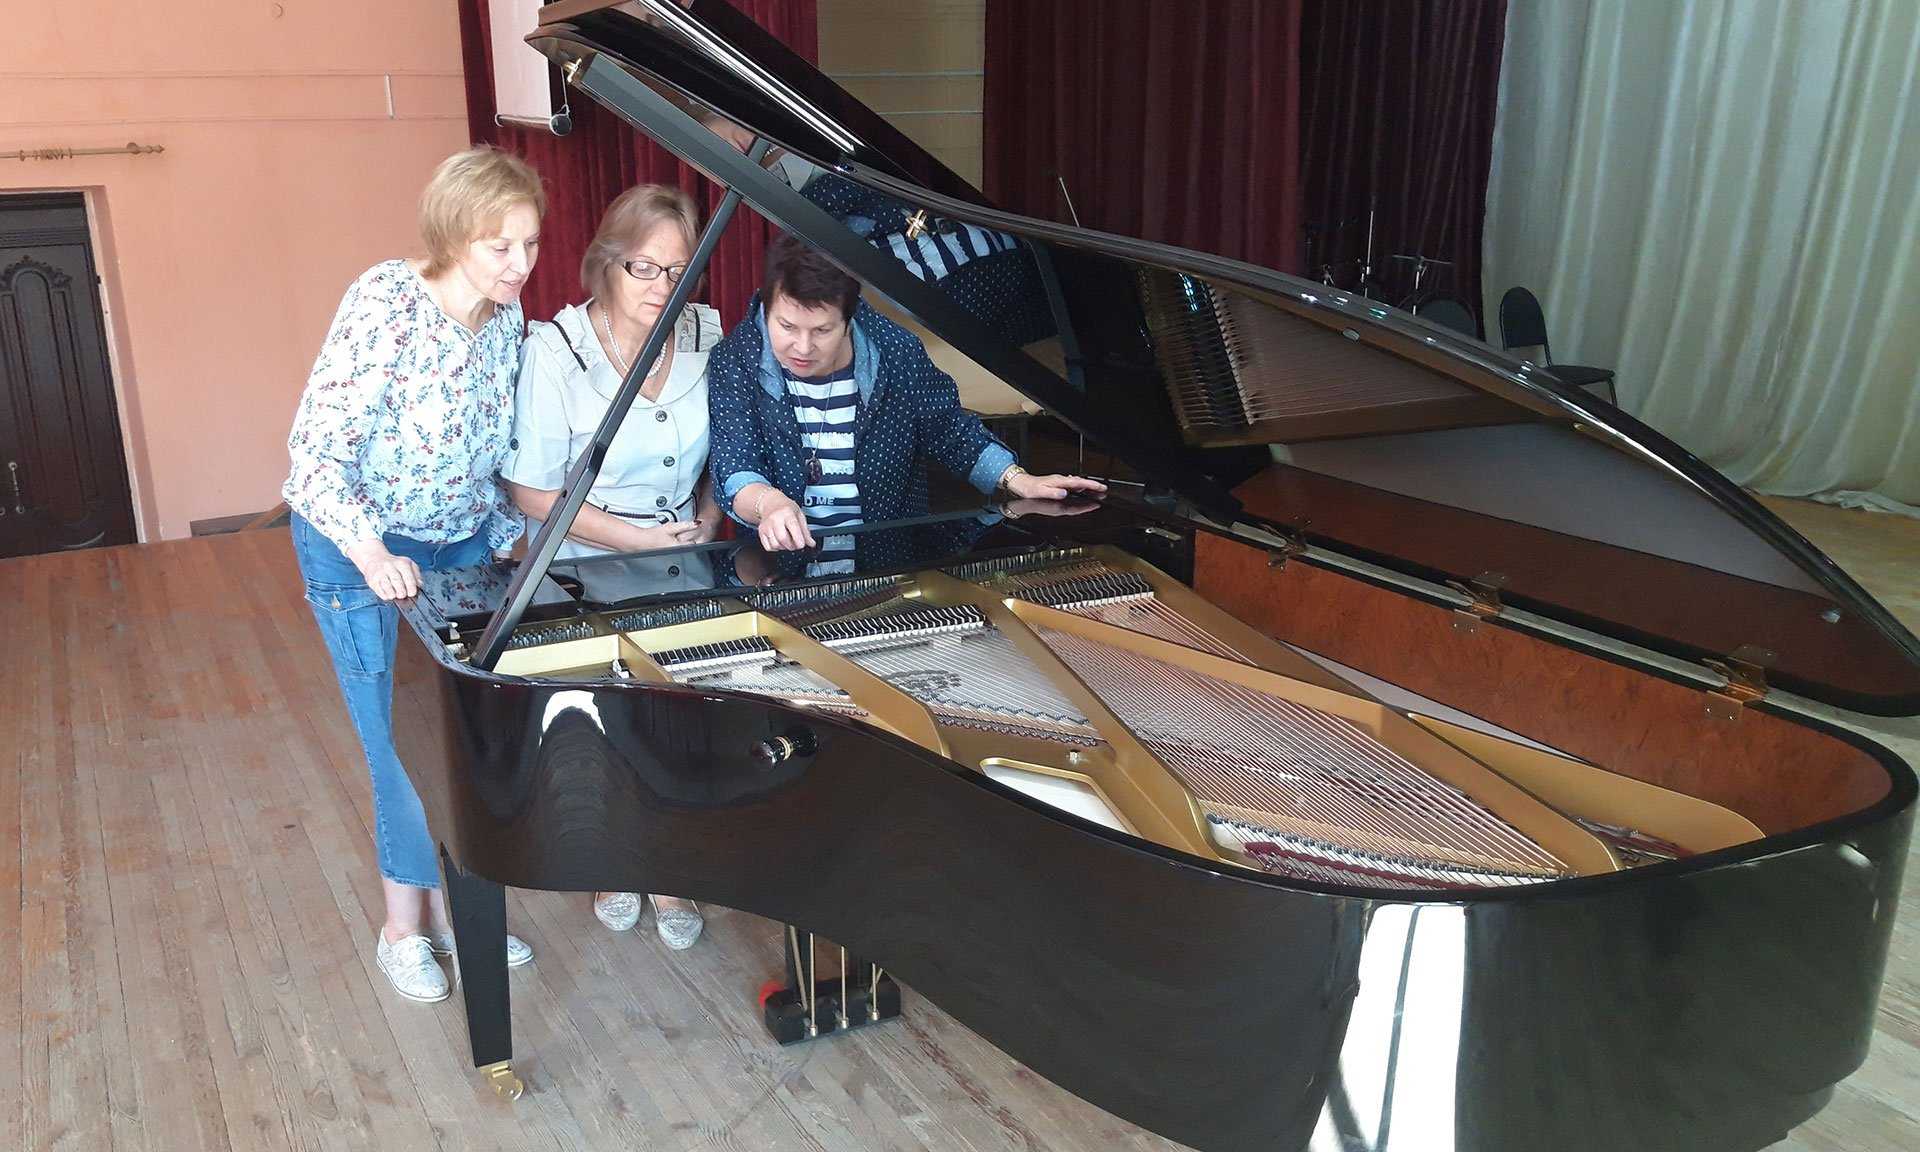 Брянский колледж искусств получил от президента Путина престижный рояль